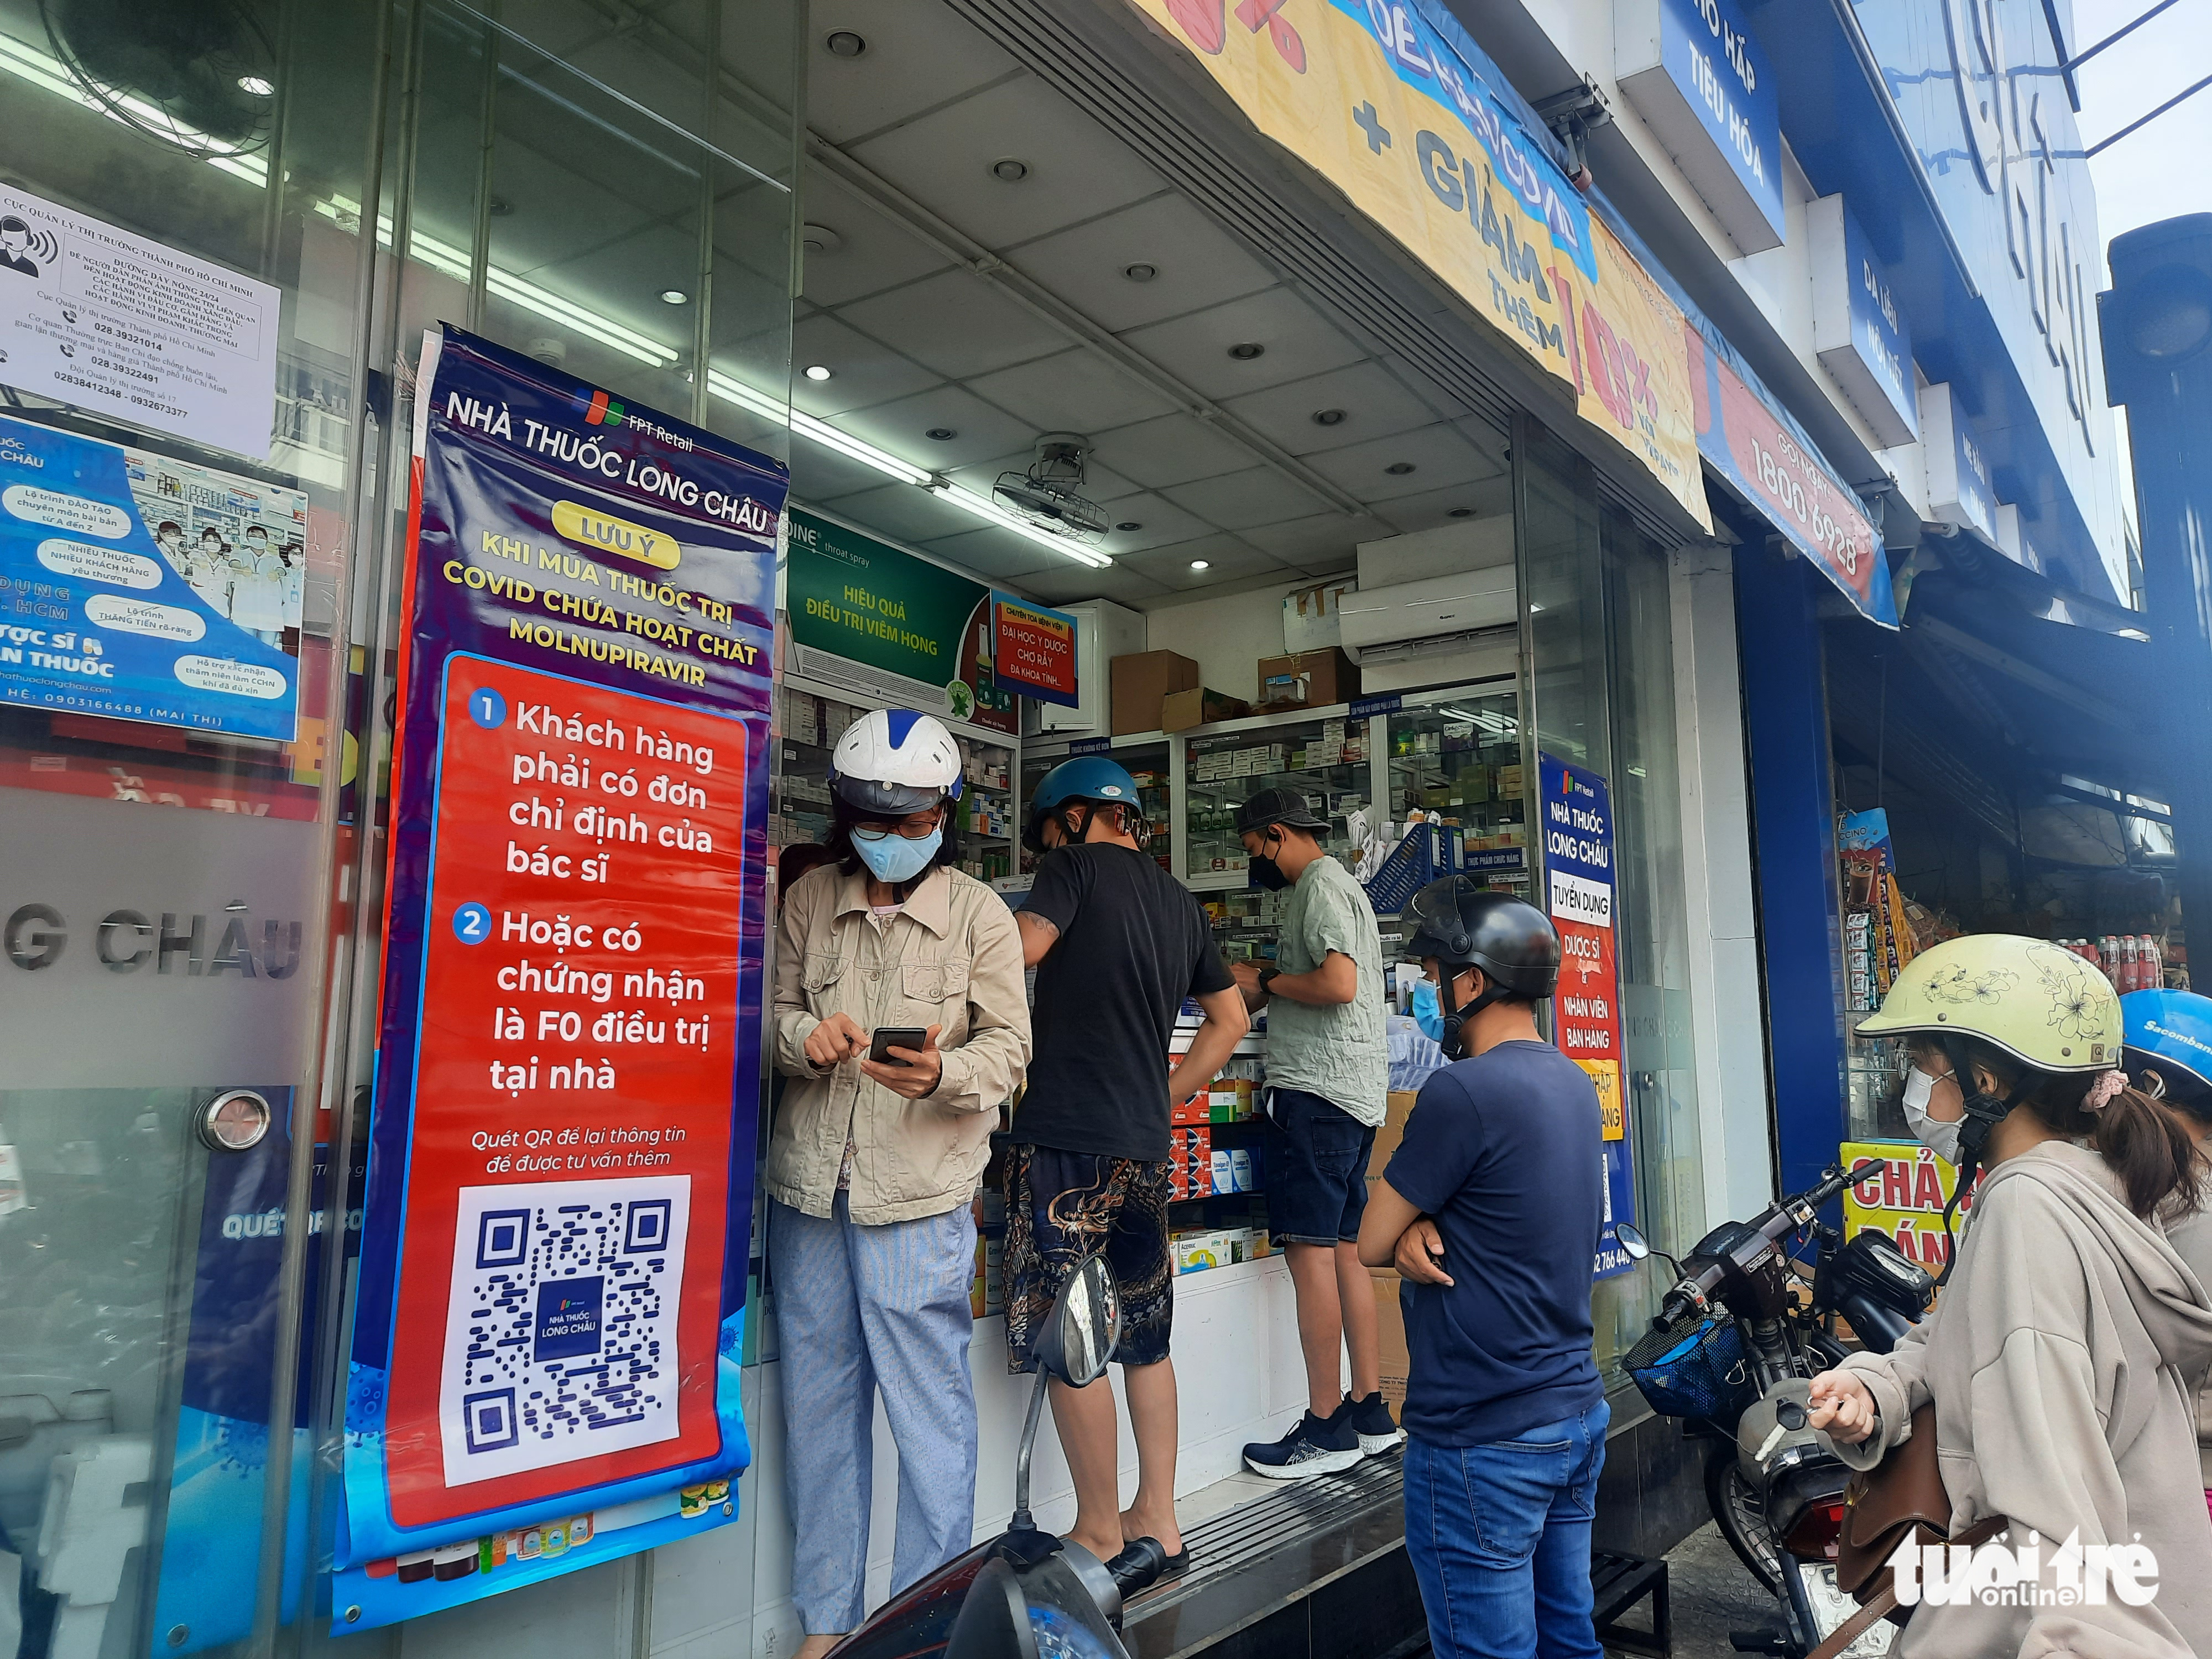 Modern pharmacies thrive in Vietnam